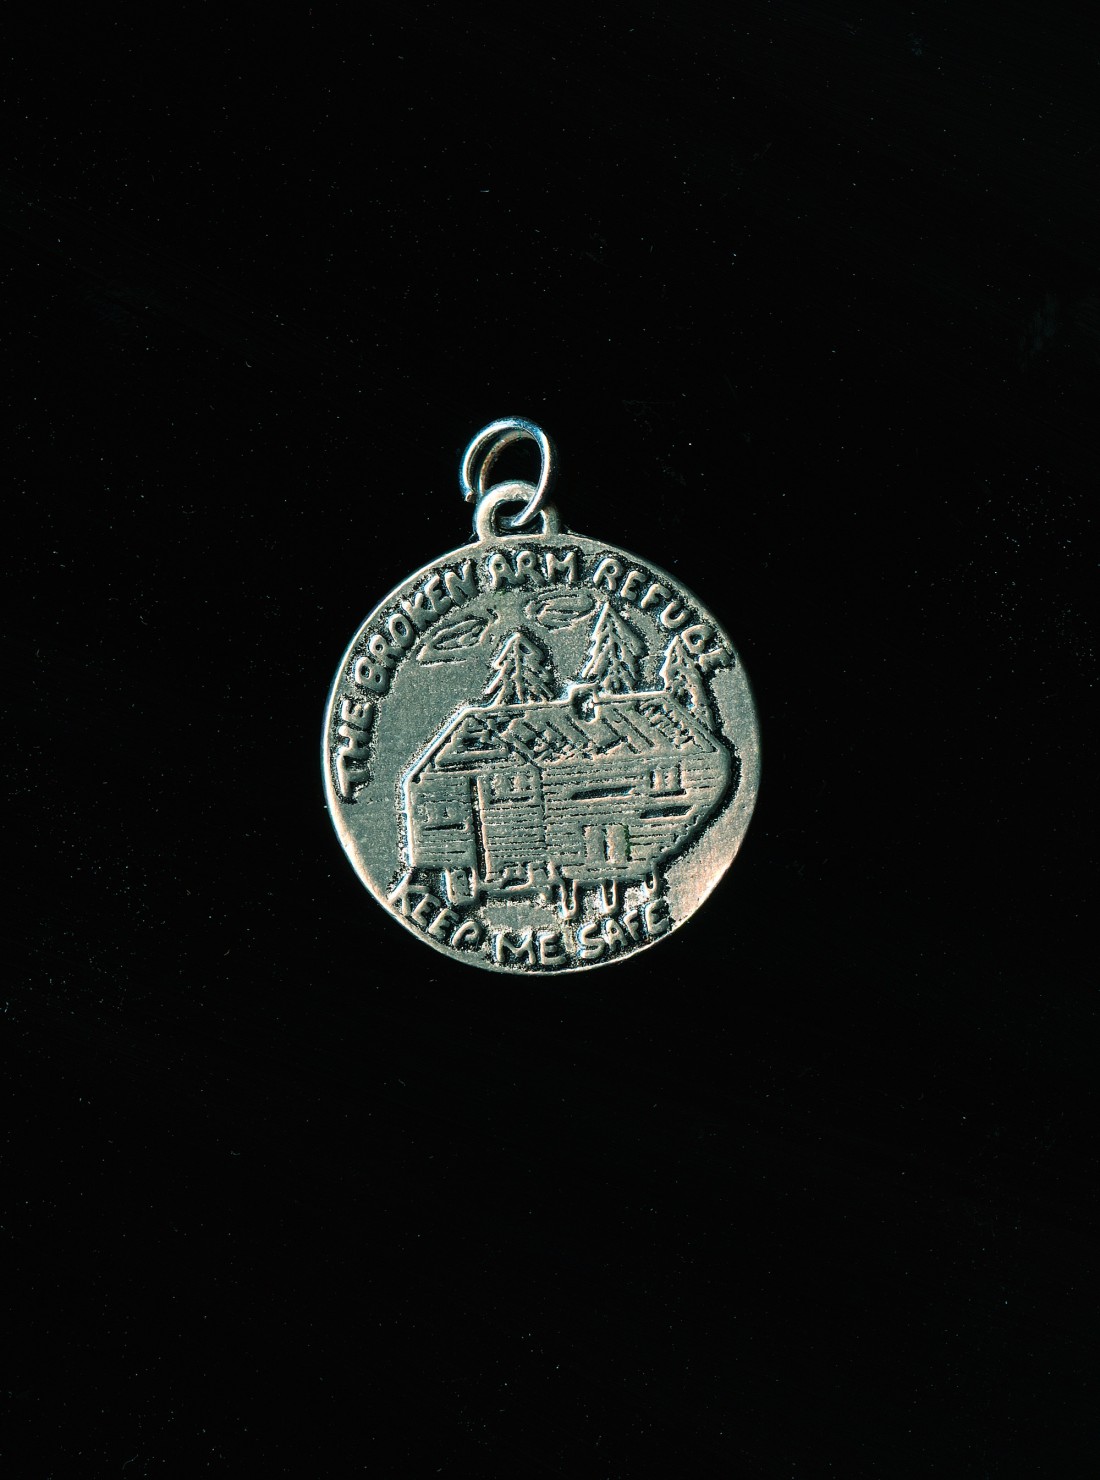 Refuge medal